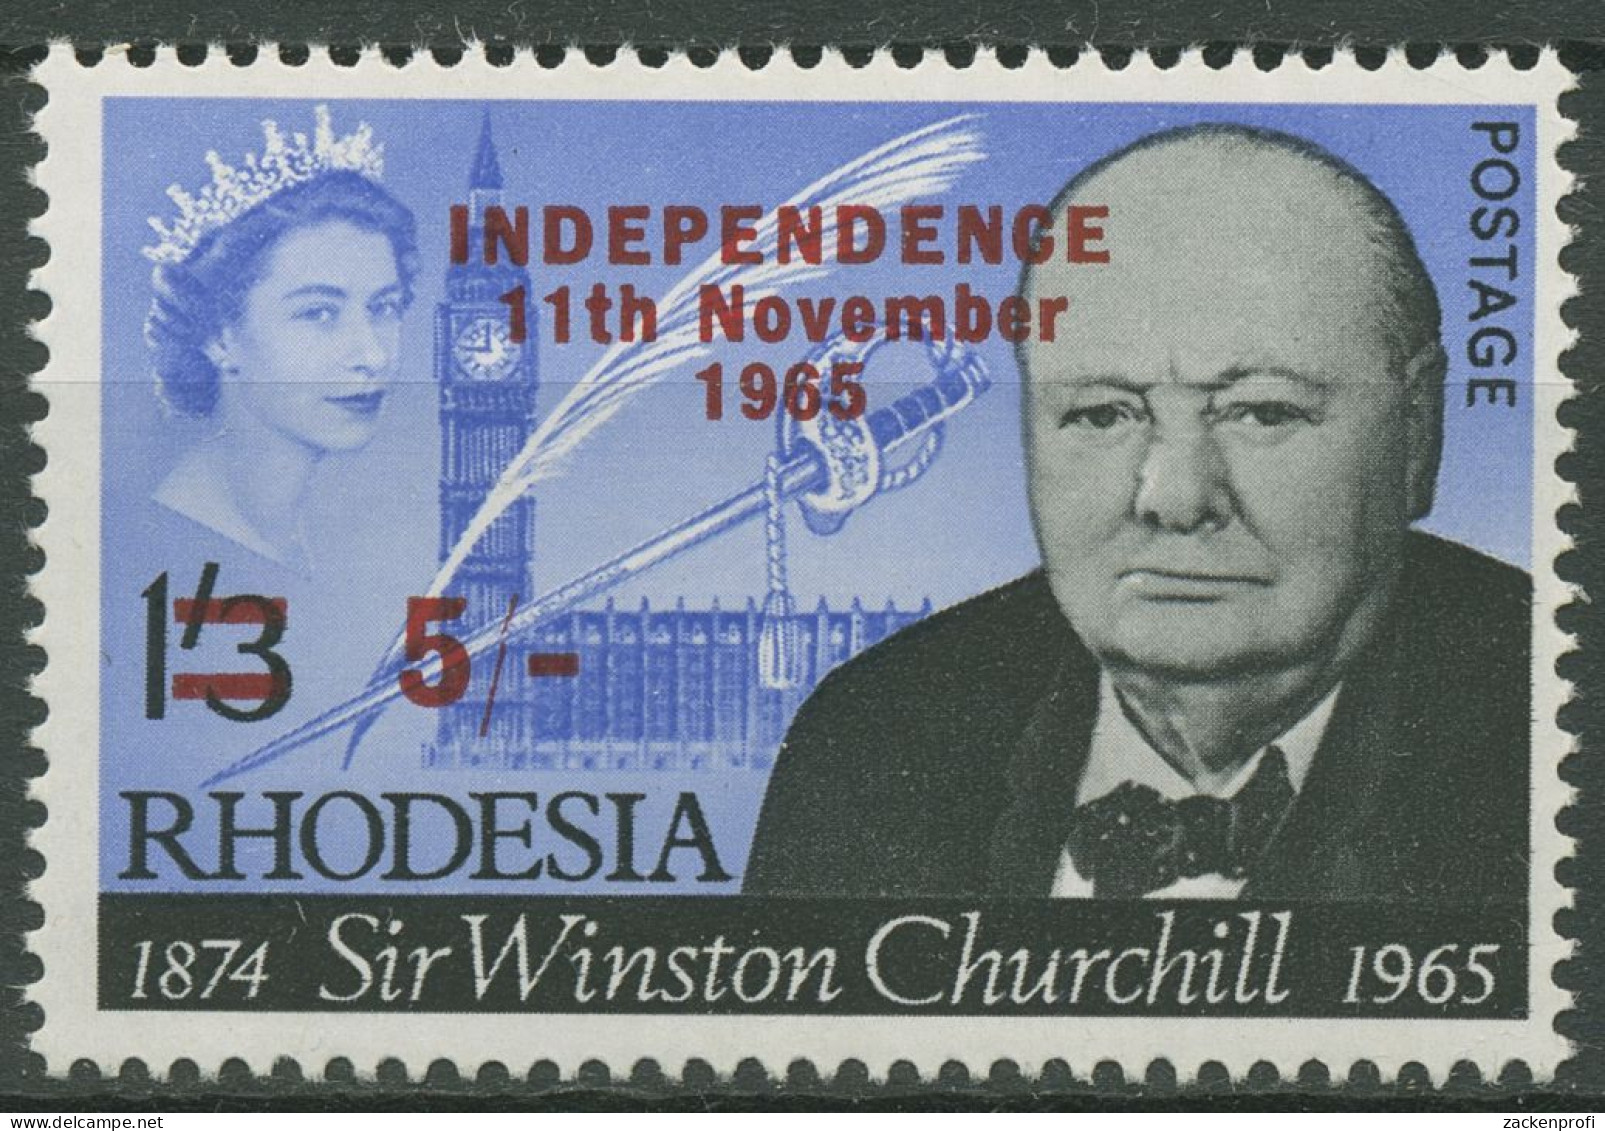 Rhodesien 1966 Winston Churchill Mit Aufdruck Independence 23 Postfrisch - Rhodesia (1964-1980)